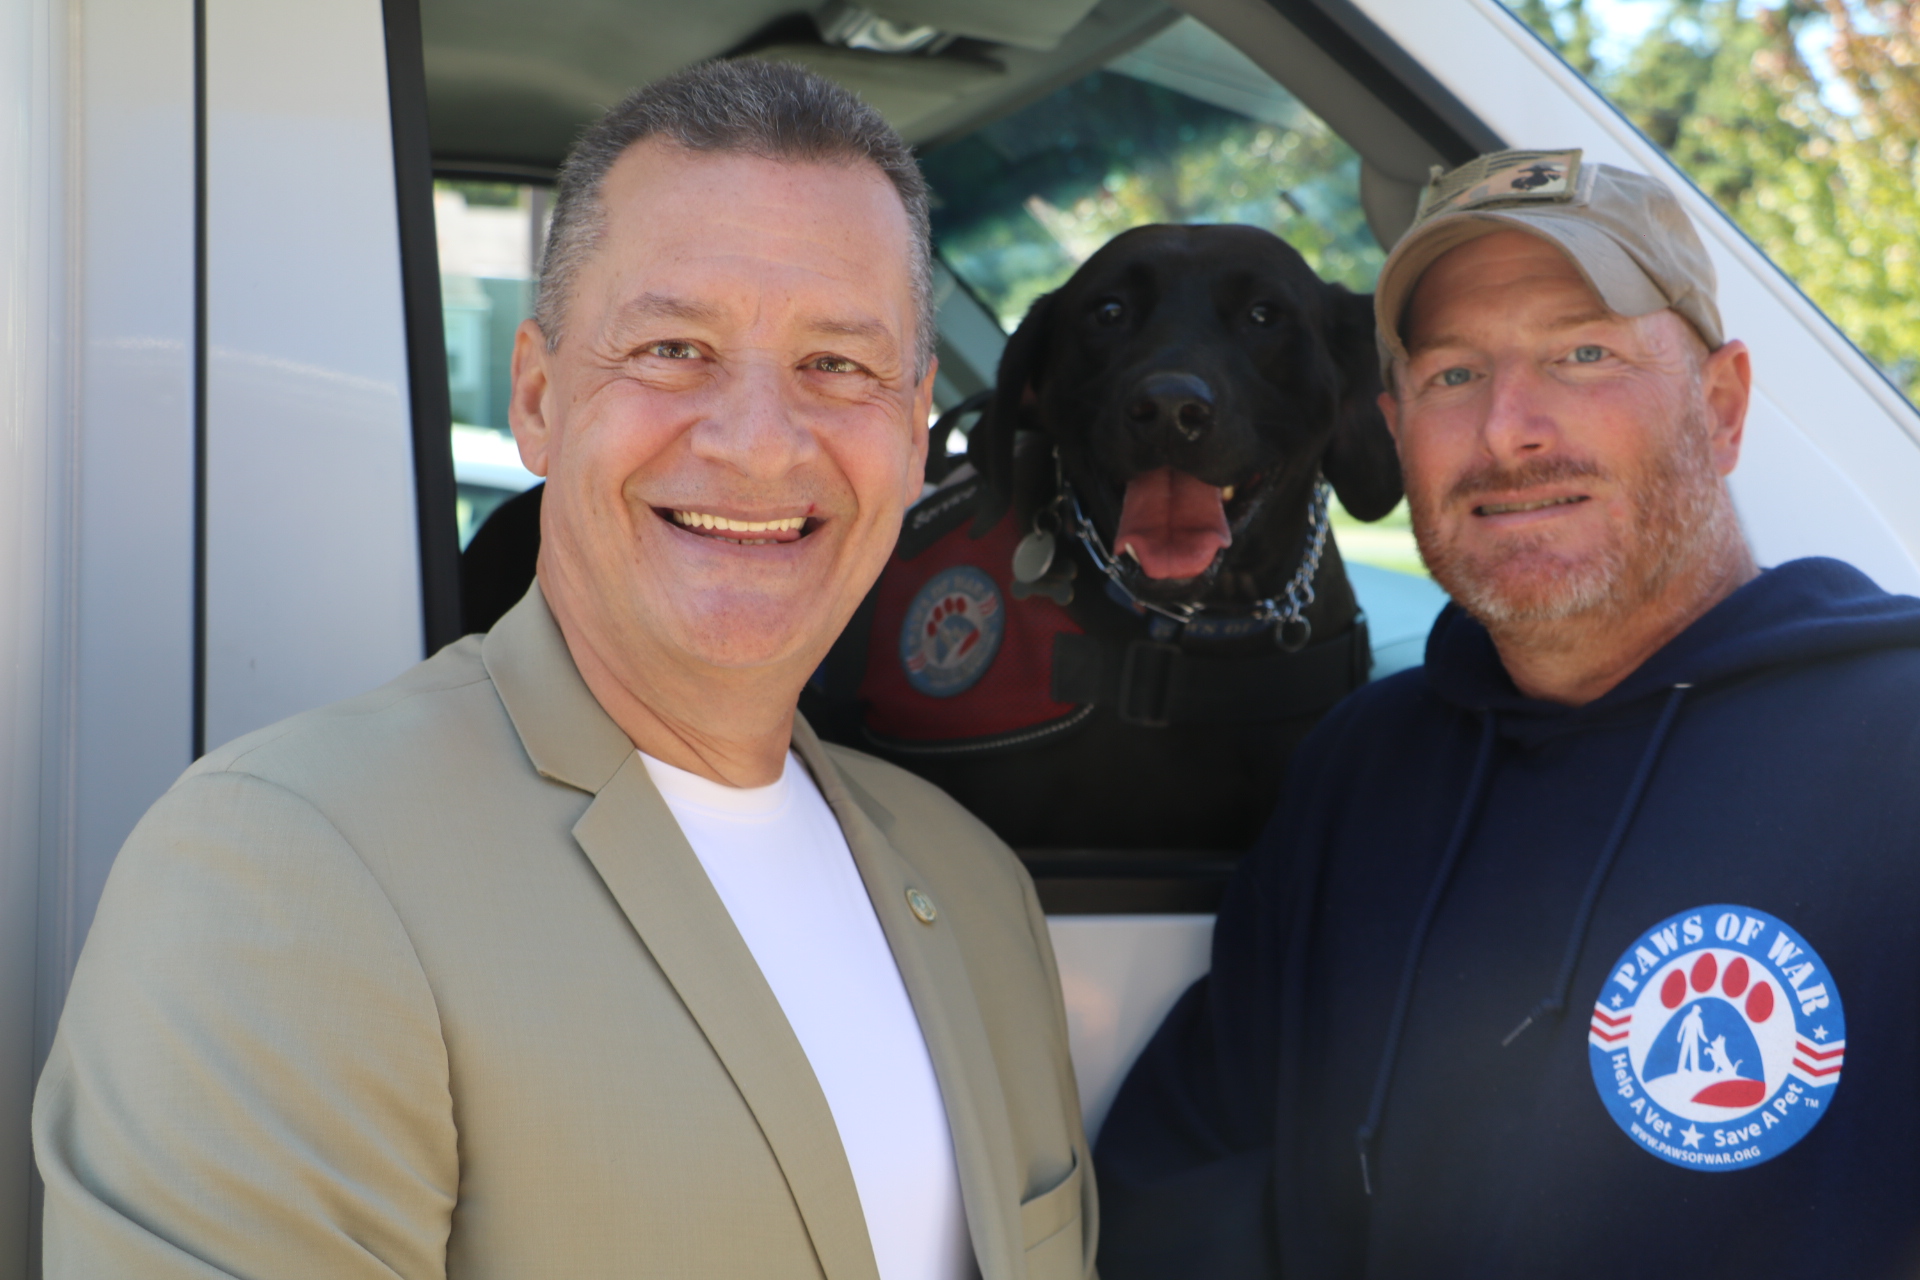 Legislador Sam González apoya clínica móvil para mascotas de veteranos (Fotos)